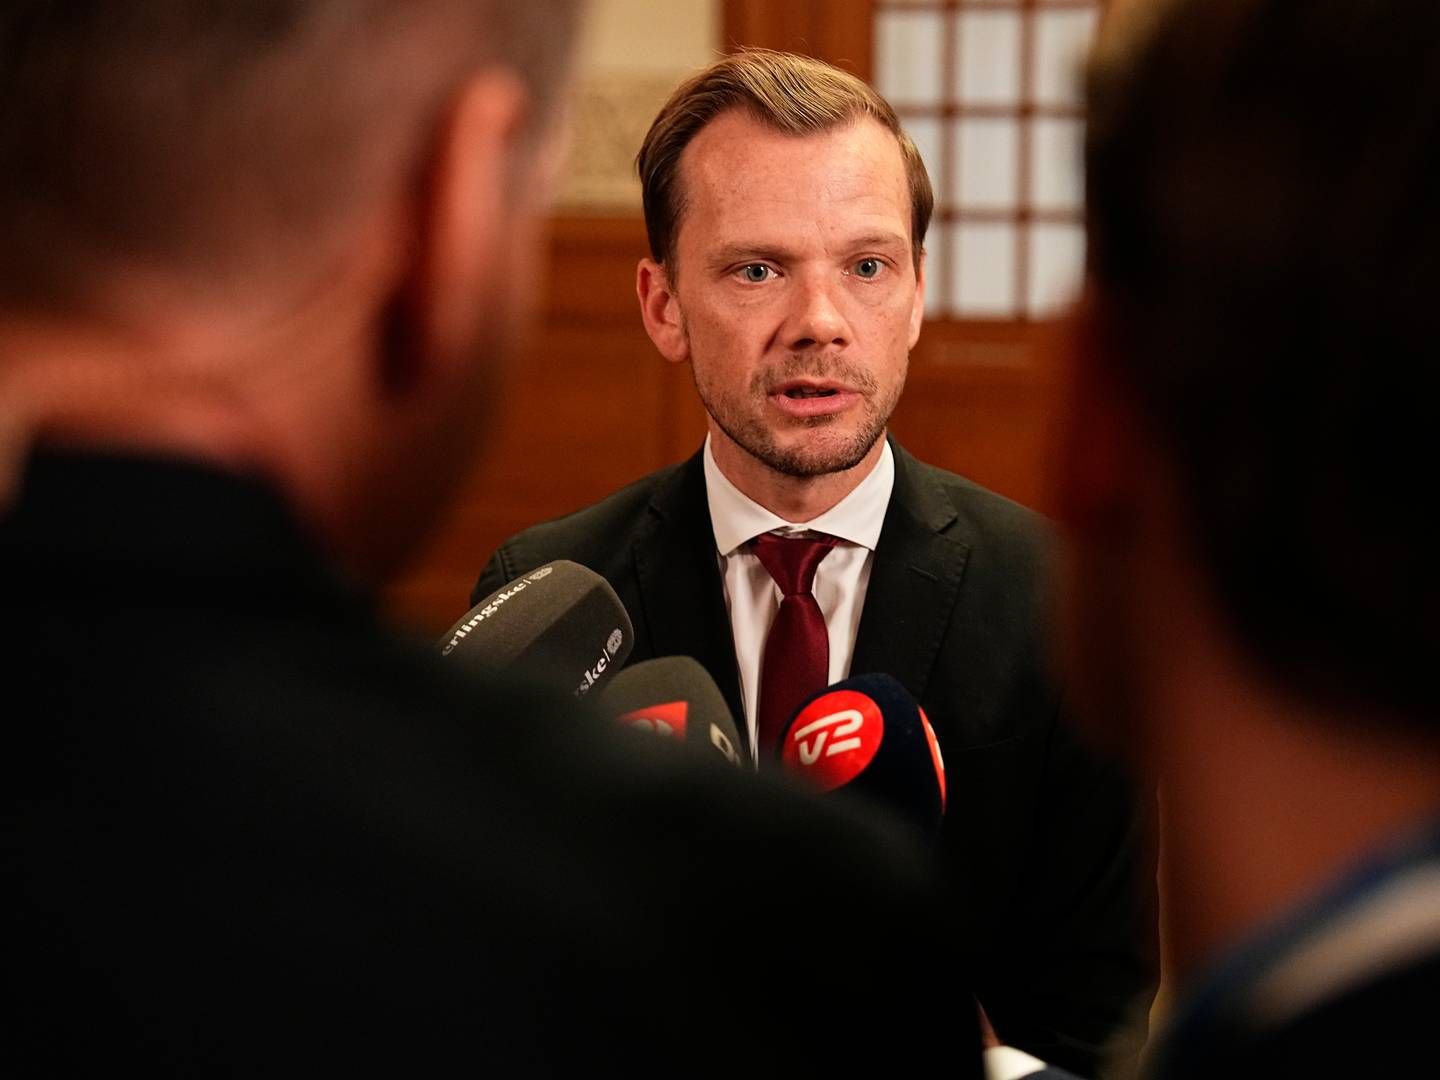 TILTAK: Danmarks justisminister, Peter Hummelgaard, varsler tiltak mot hvitvasking etter dokumentar. | Foto: Mads Claus Rasmussen / Ritzau Scanpix via AP / NTB